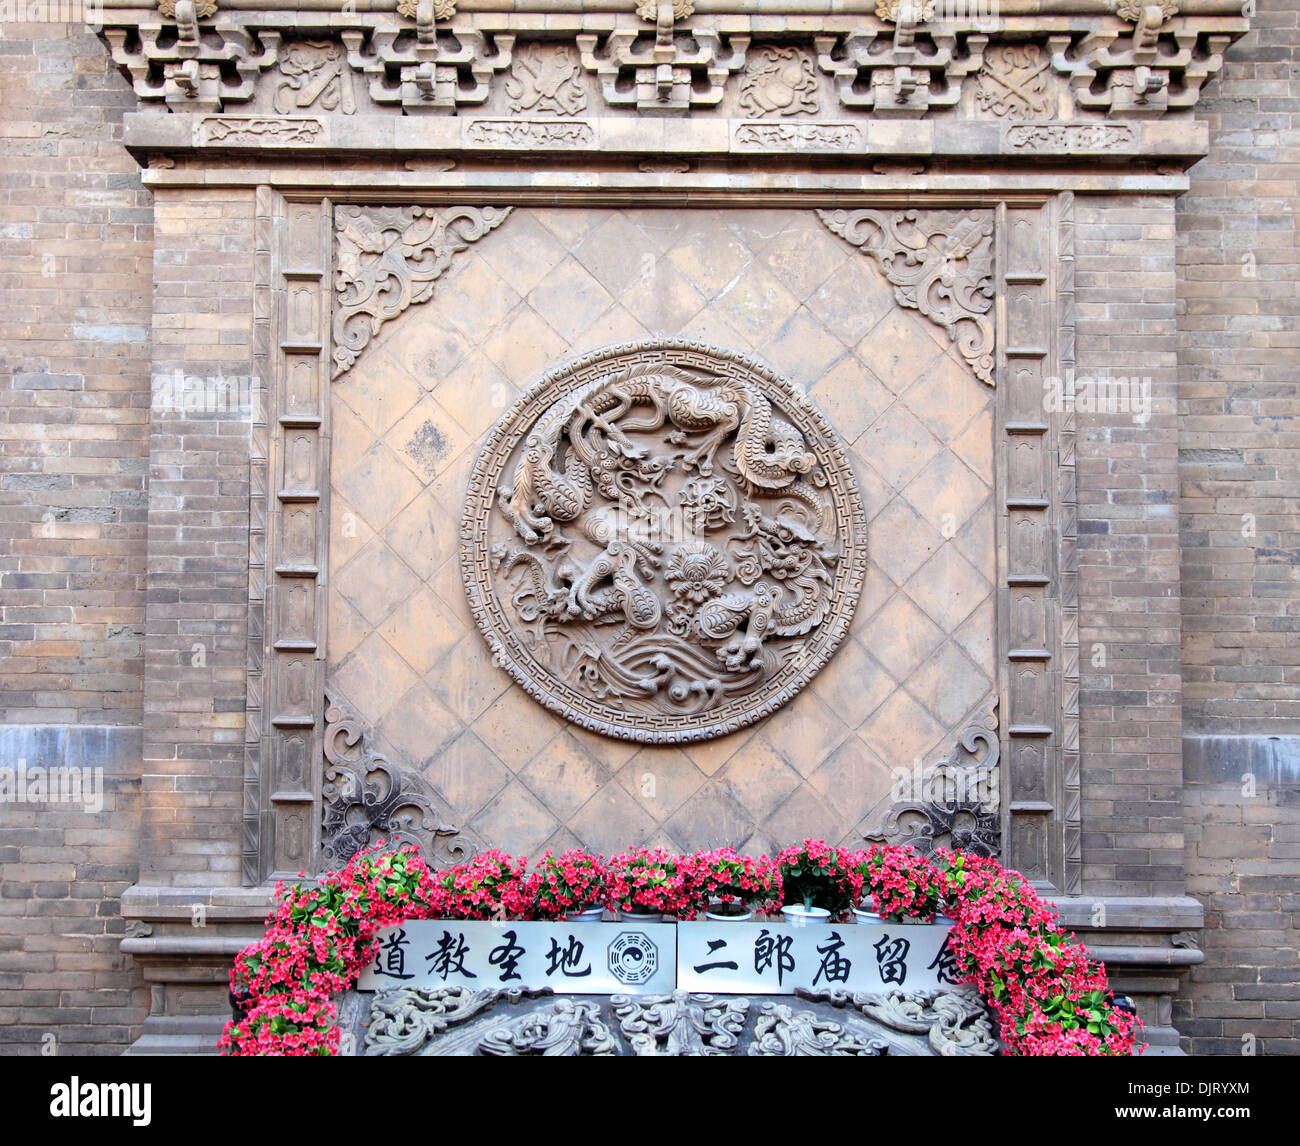 Roundel with dragon, Pingyao, Shanxi, China Stock Photo